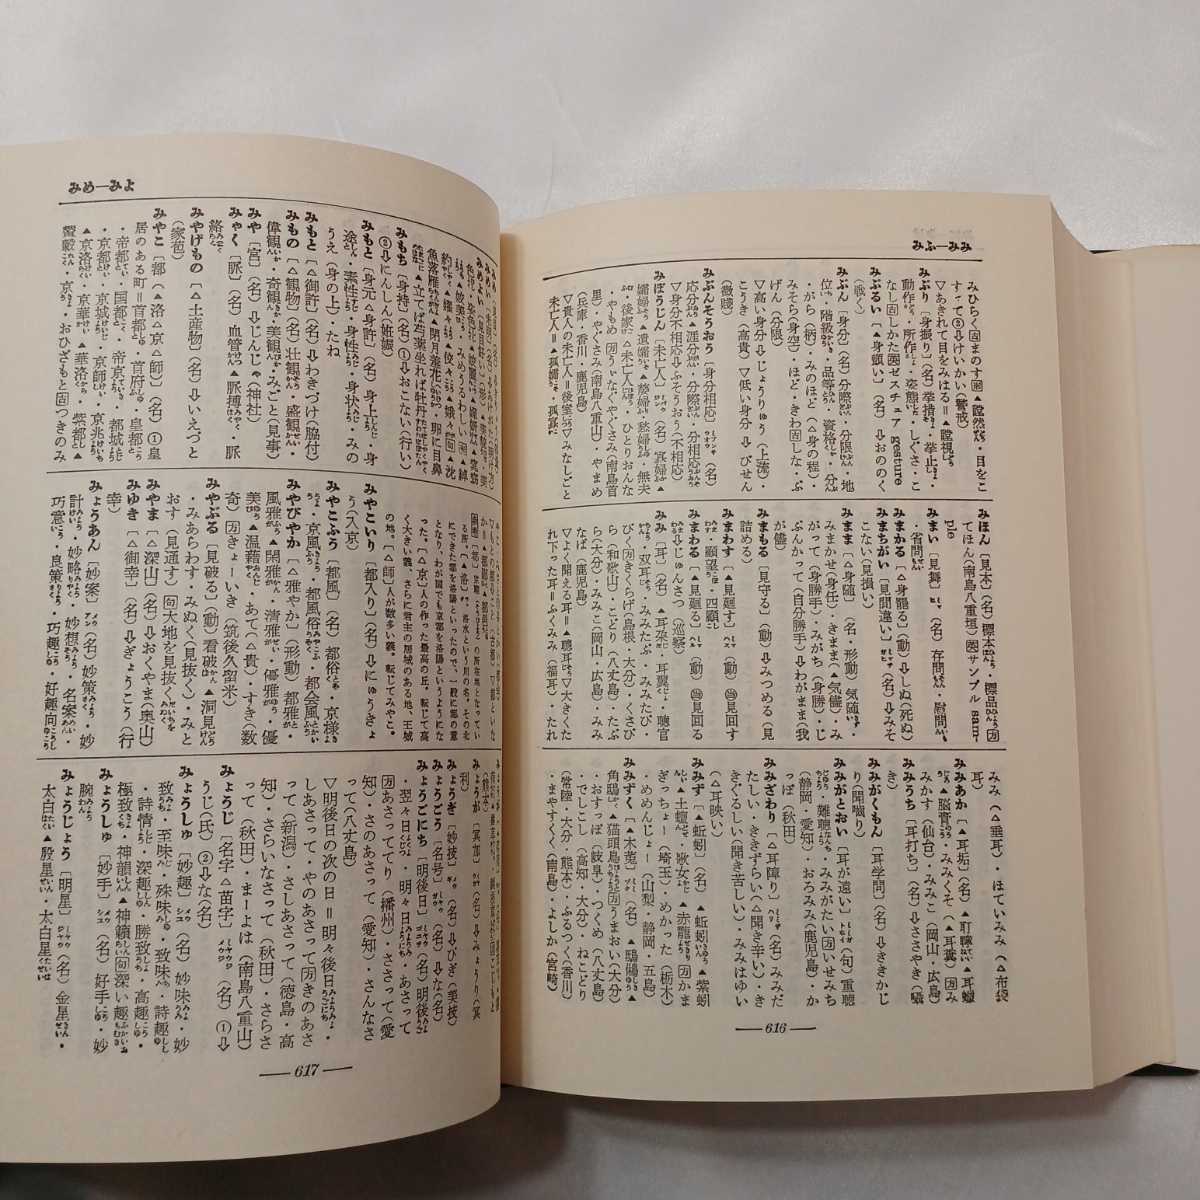 zaa-414♪類語辞典■広田栄太郎・鈴木棠三(著) 東京堂出版 1978年8月10日 69版発行